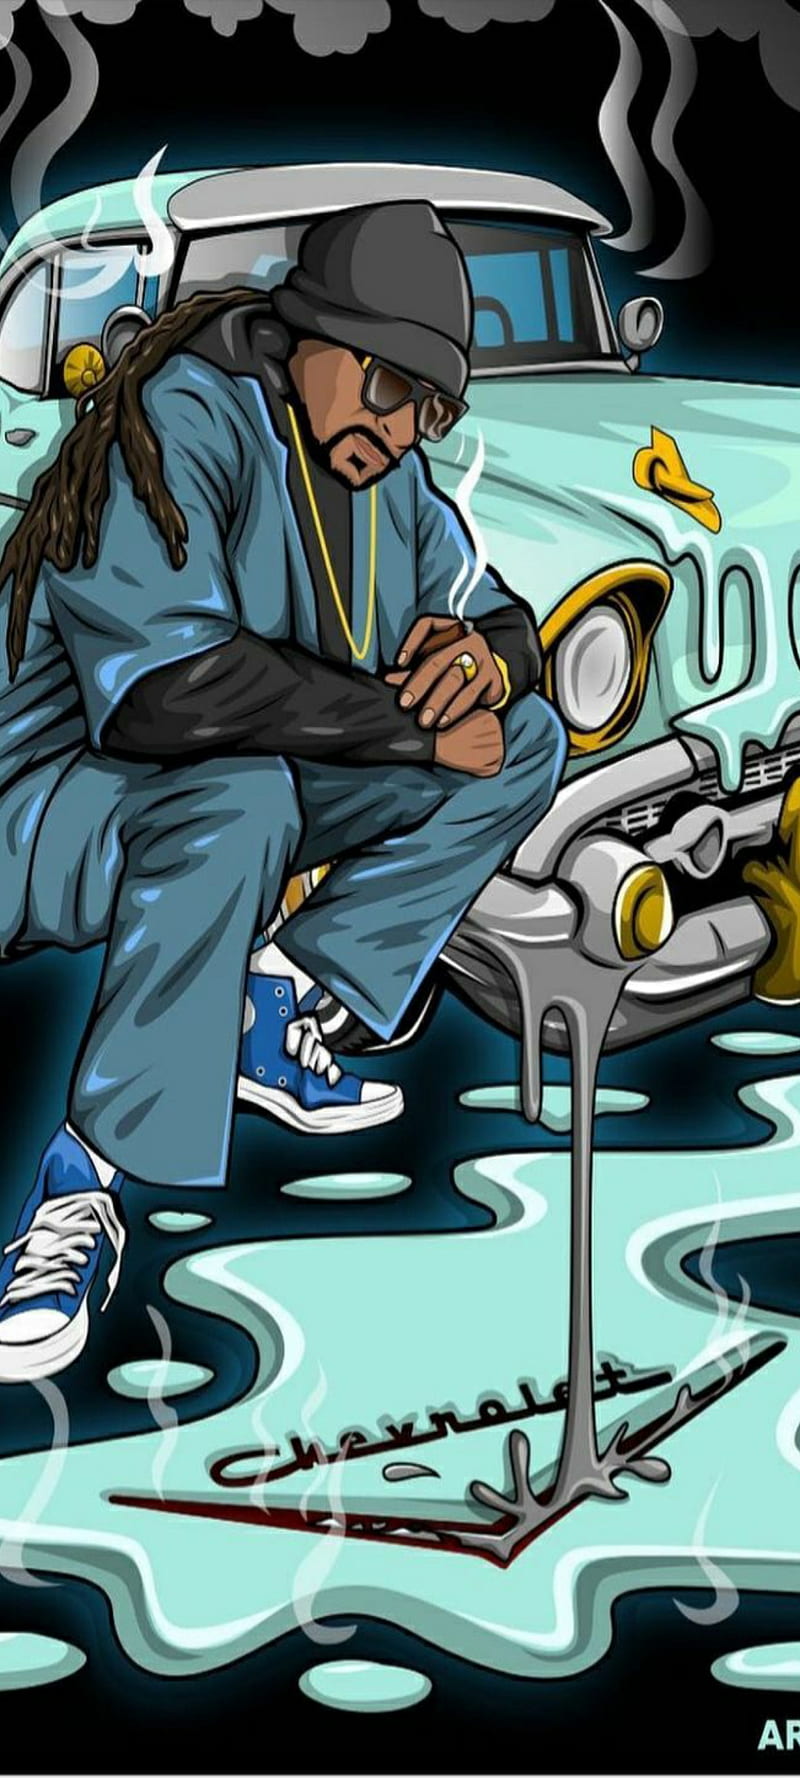 Eminem  Snoop Dogg  Drdre  Ice Cube  Eazye  Biggie  2pac  Hip hop  artwork Hip hop poster Rap wallpaper